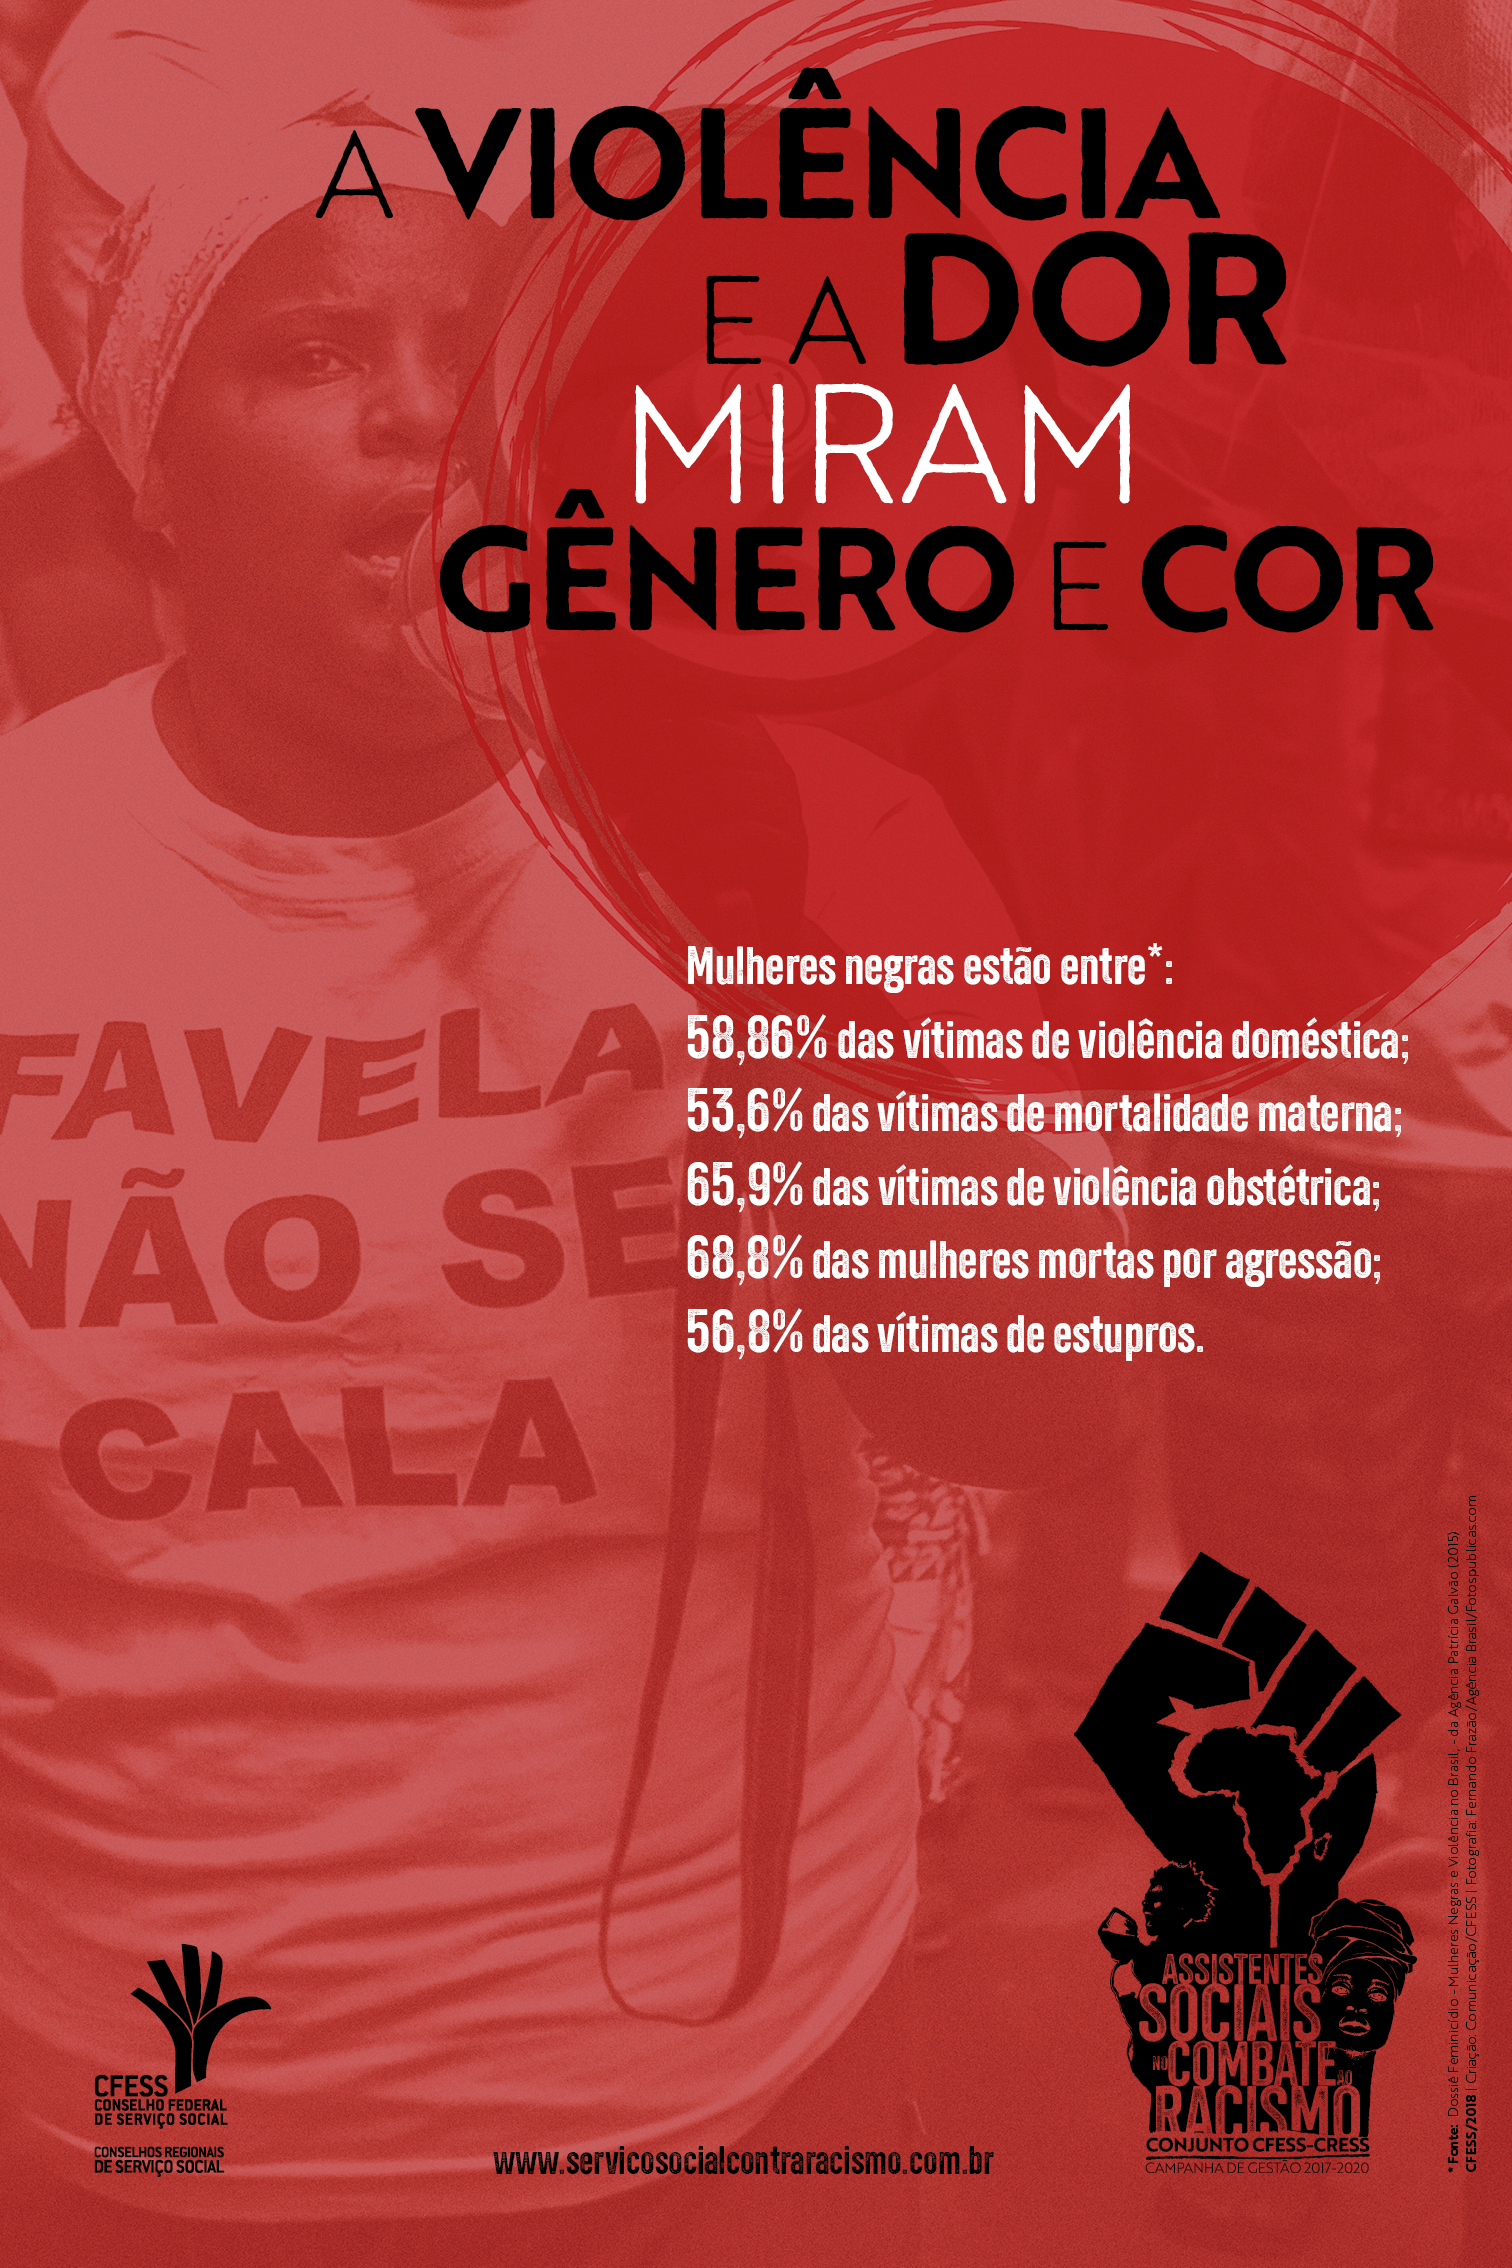 Cartaz mostra mulher negra manifestando-se com uma camiseta escrito favela. No topo do cartaz, o slogan A violência e dor miram gênero e cor. Abaixo, em letras menores, os dados da violência contra as mulheres negras. 